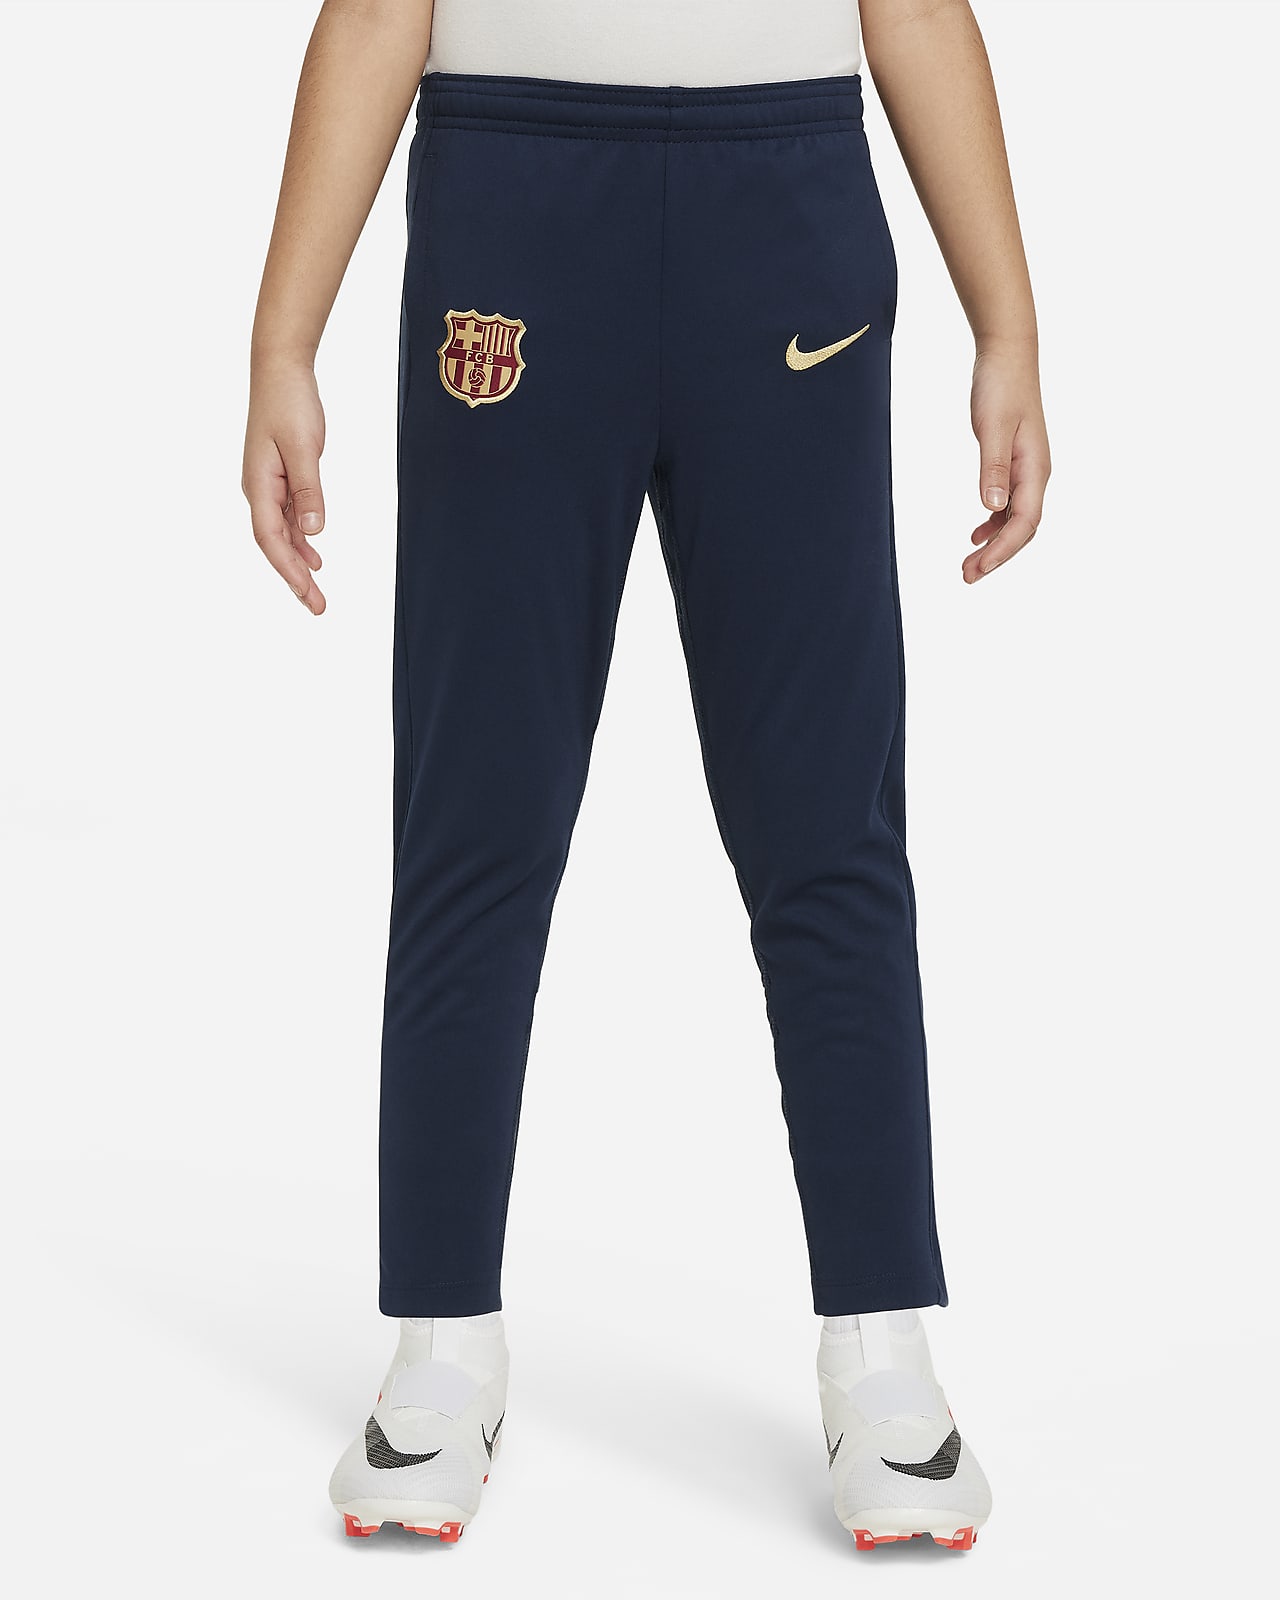 Pleteninové fotbalové kalhoty Nike Dri-FIT FC Barcelona Academy Pro pro malé děti